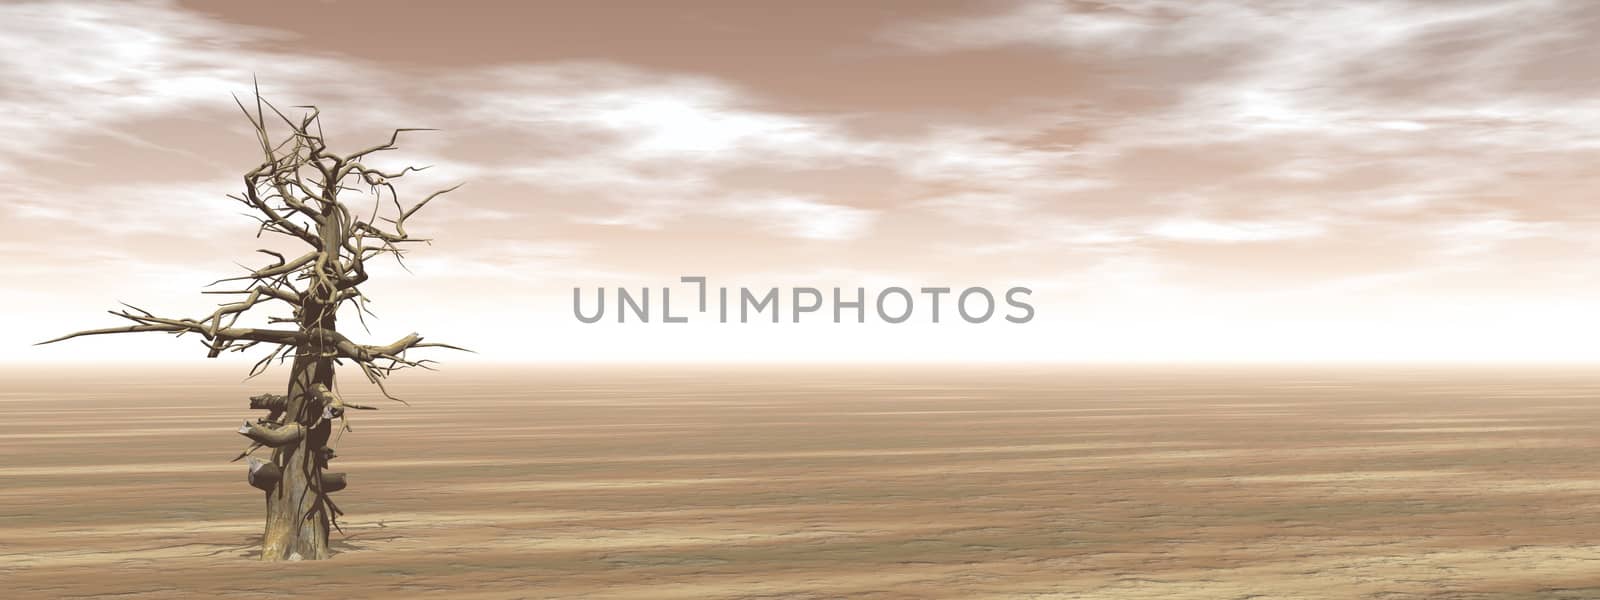 Single dead tree in the desert - 3D render by Elenaphotos21